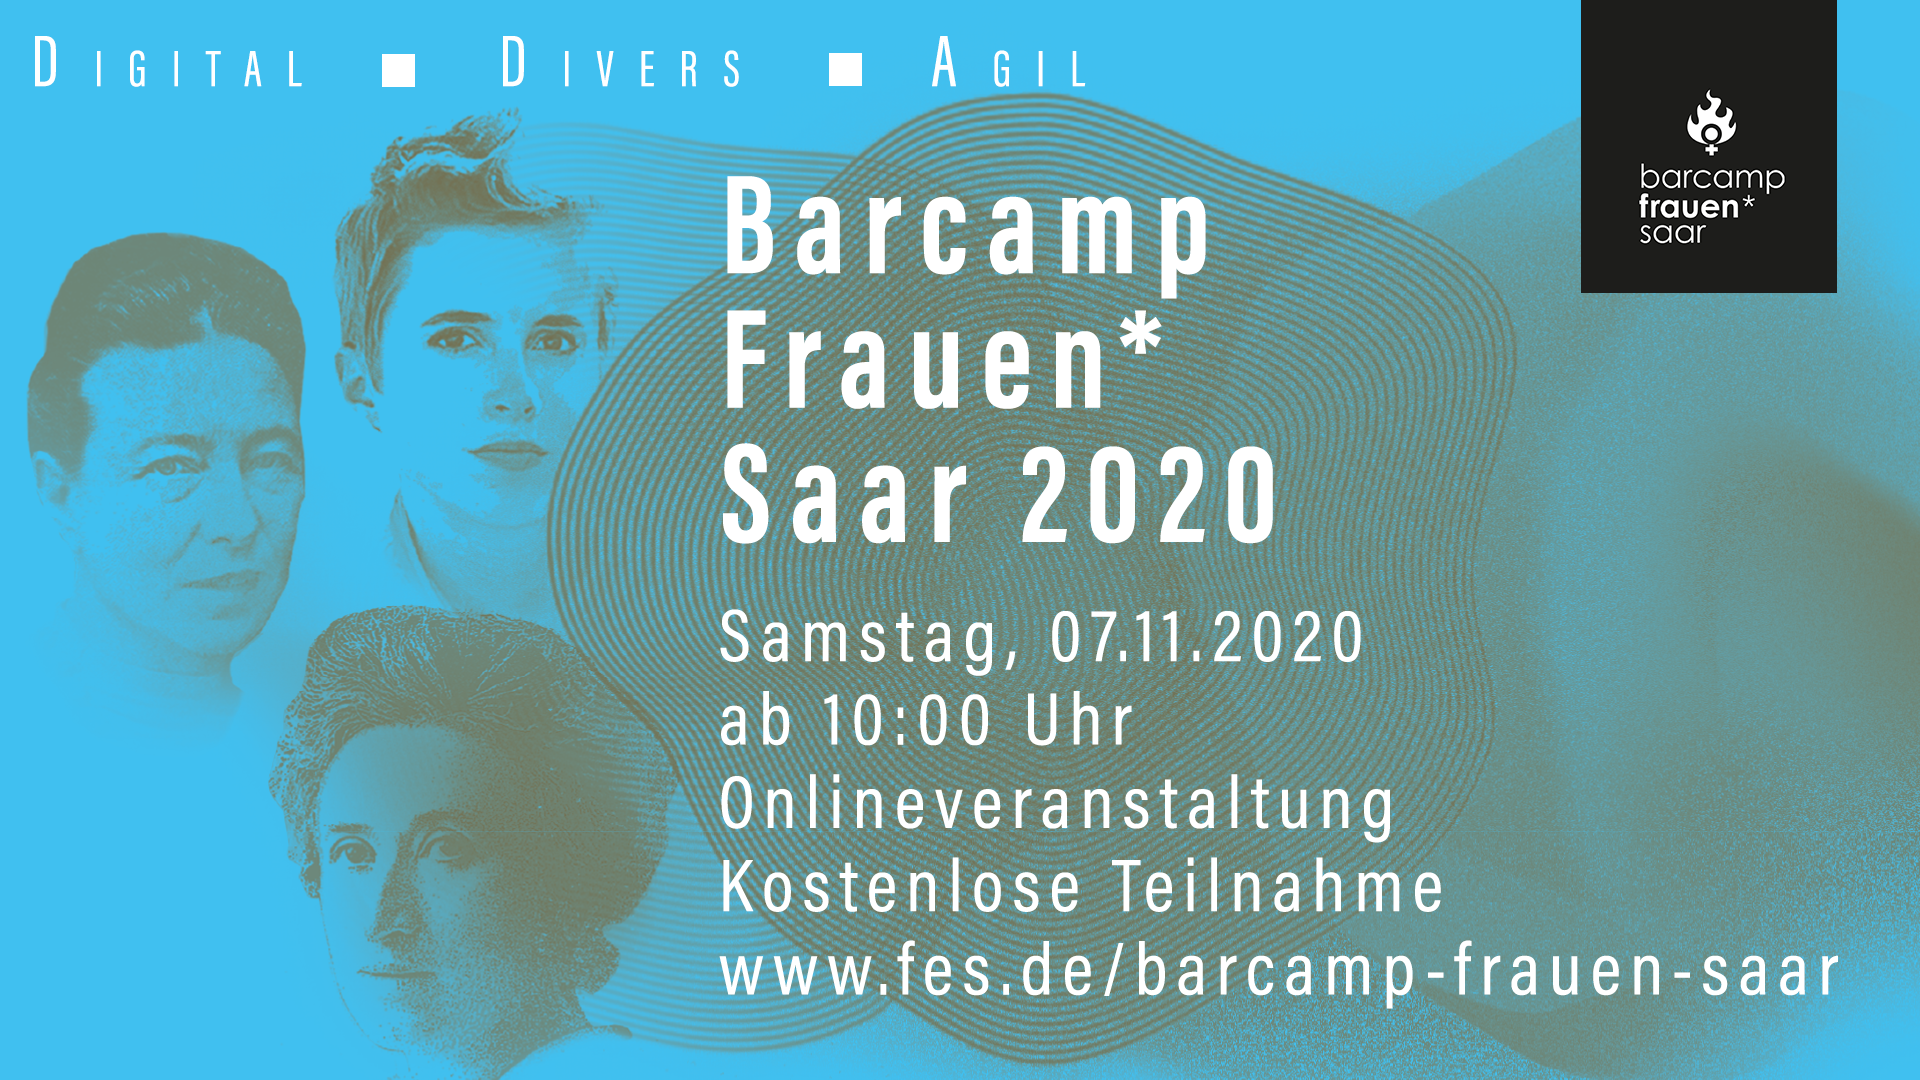 Barcamp Frauen* Saar online am 7. November 2020 von 10:00 bis 15:30 Uhr